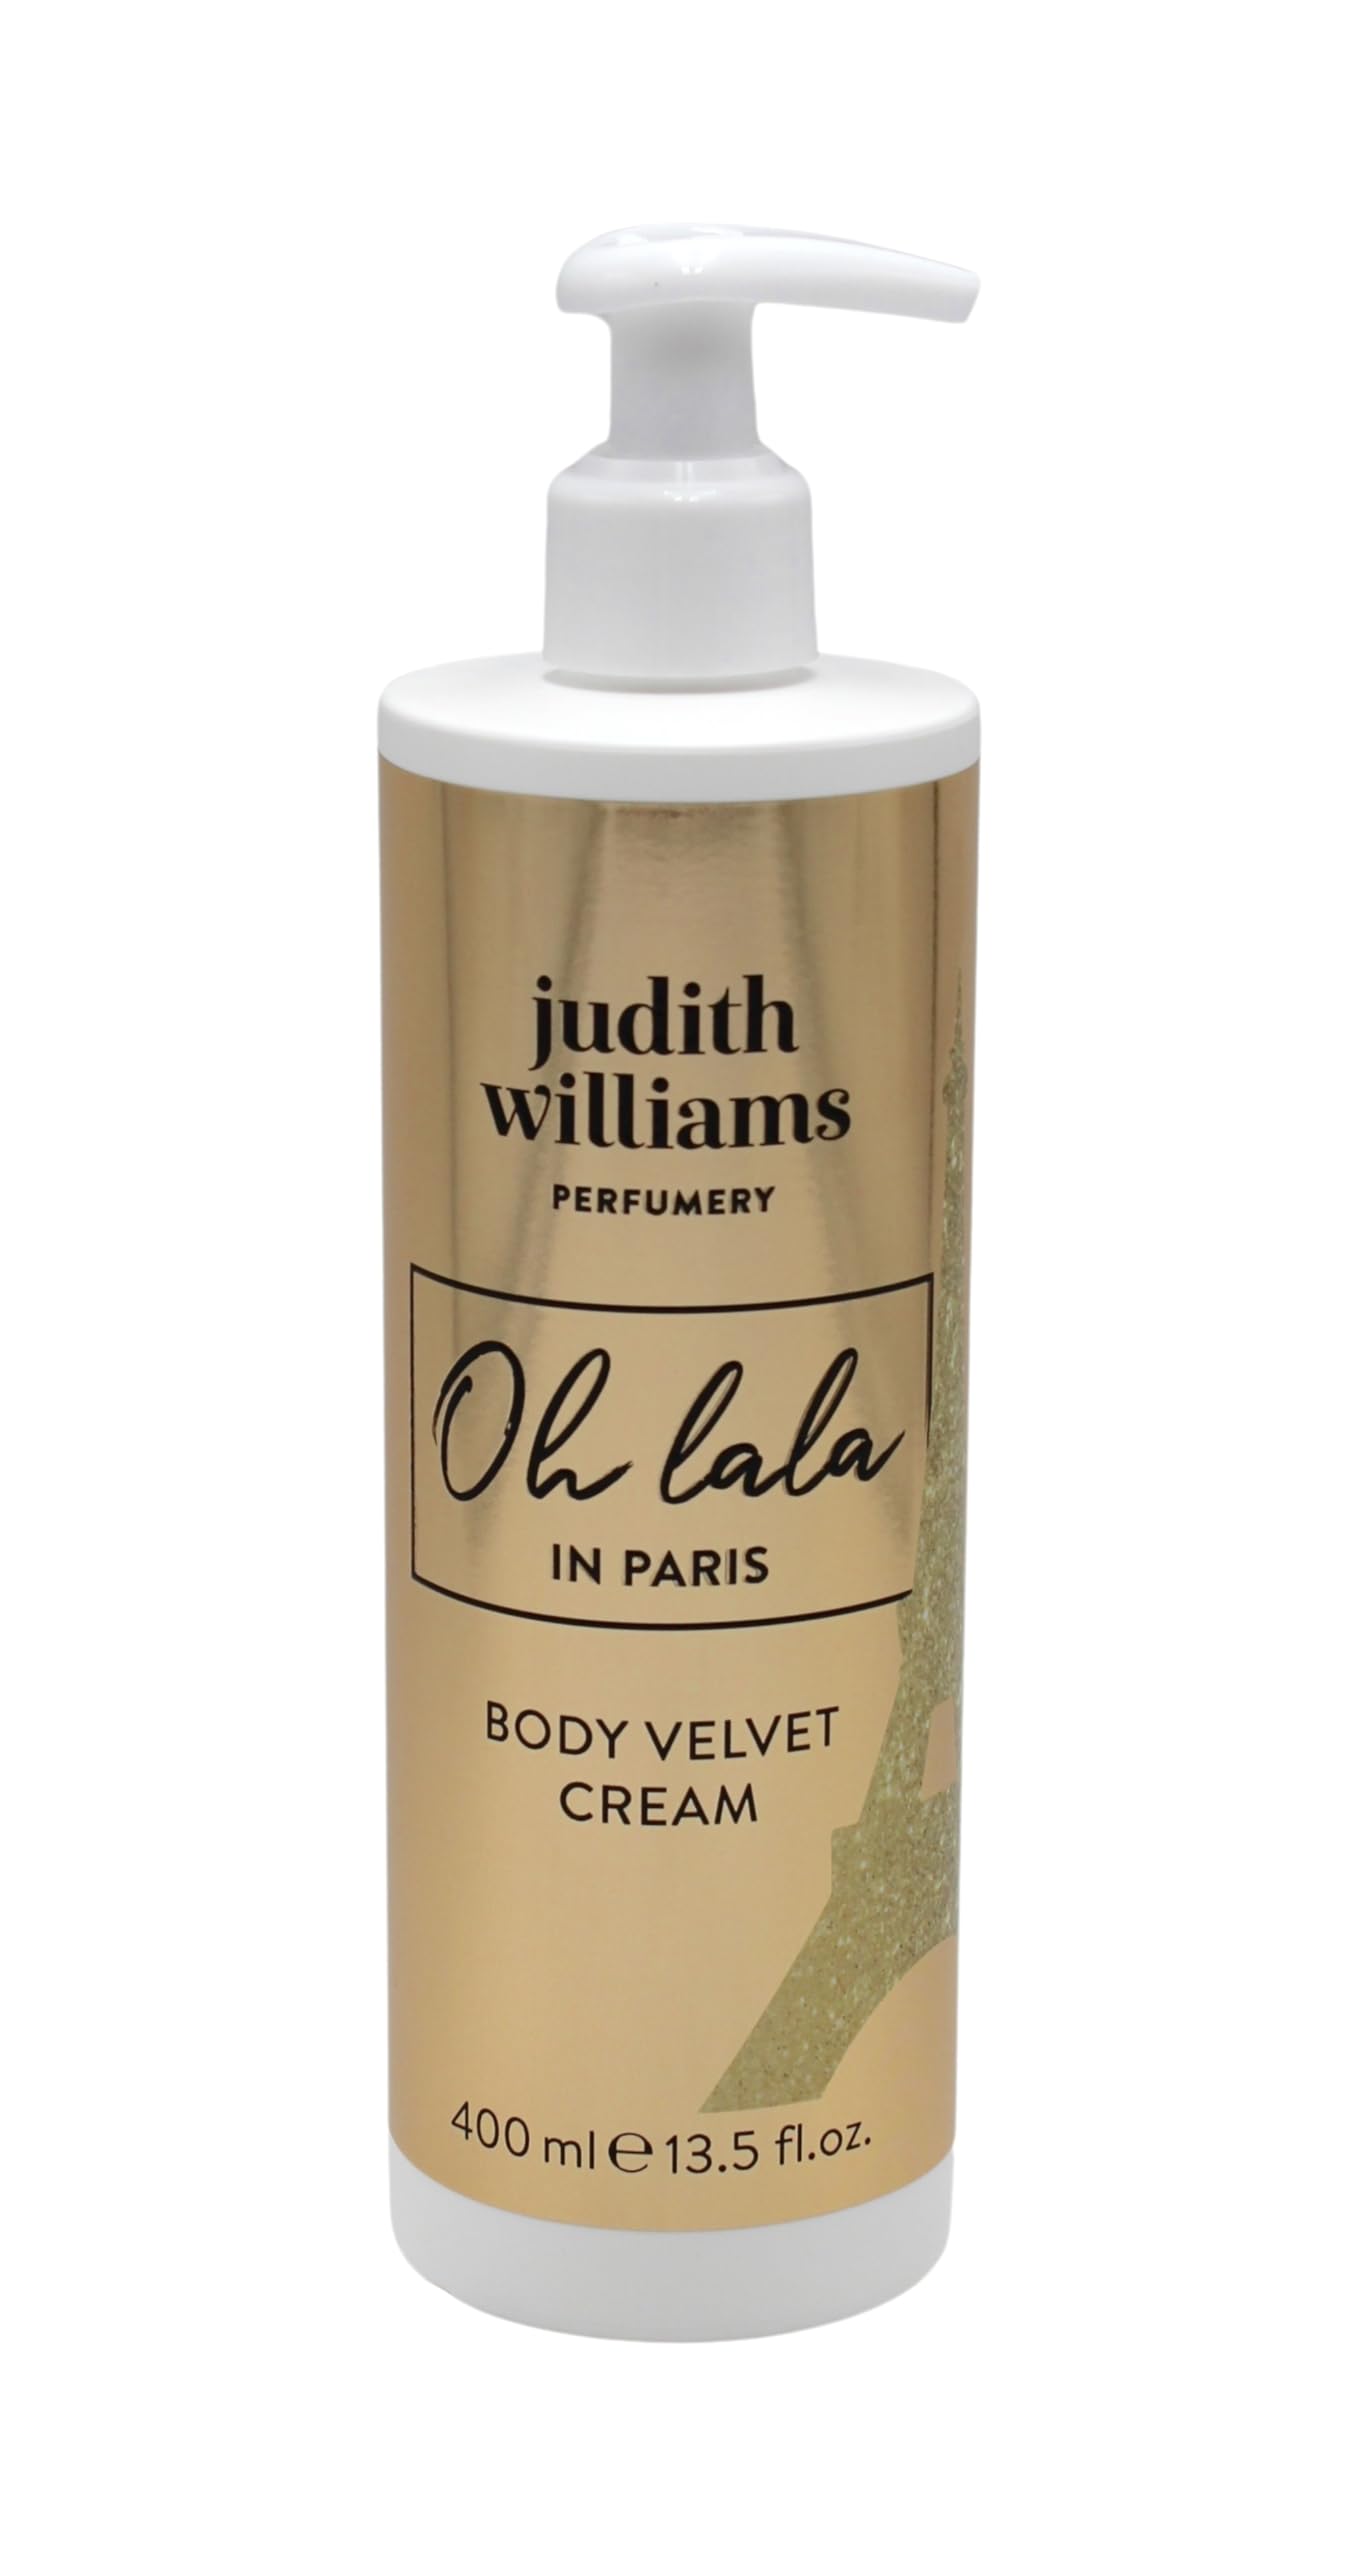 Judith Williams Oh lala in Paris Body Velvet Cream 400ml